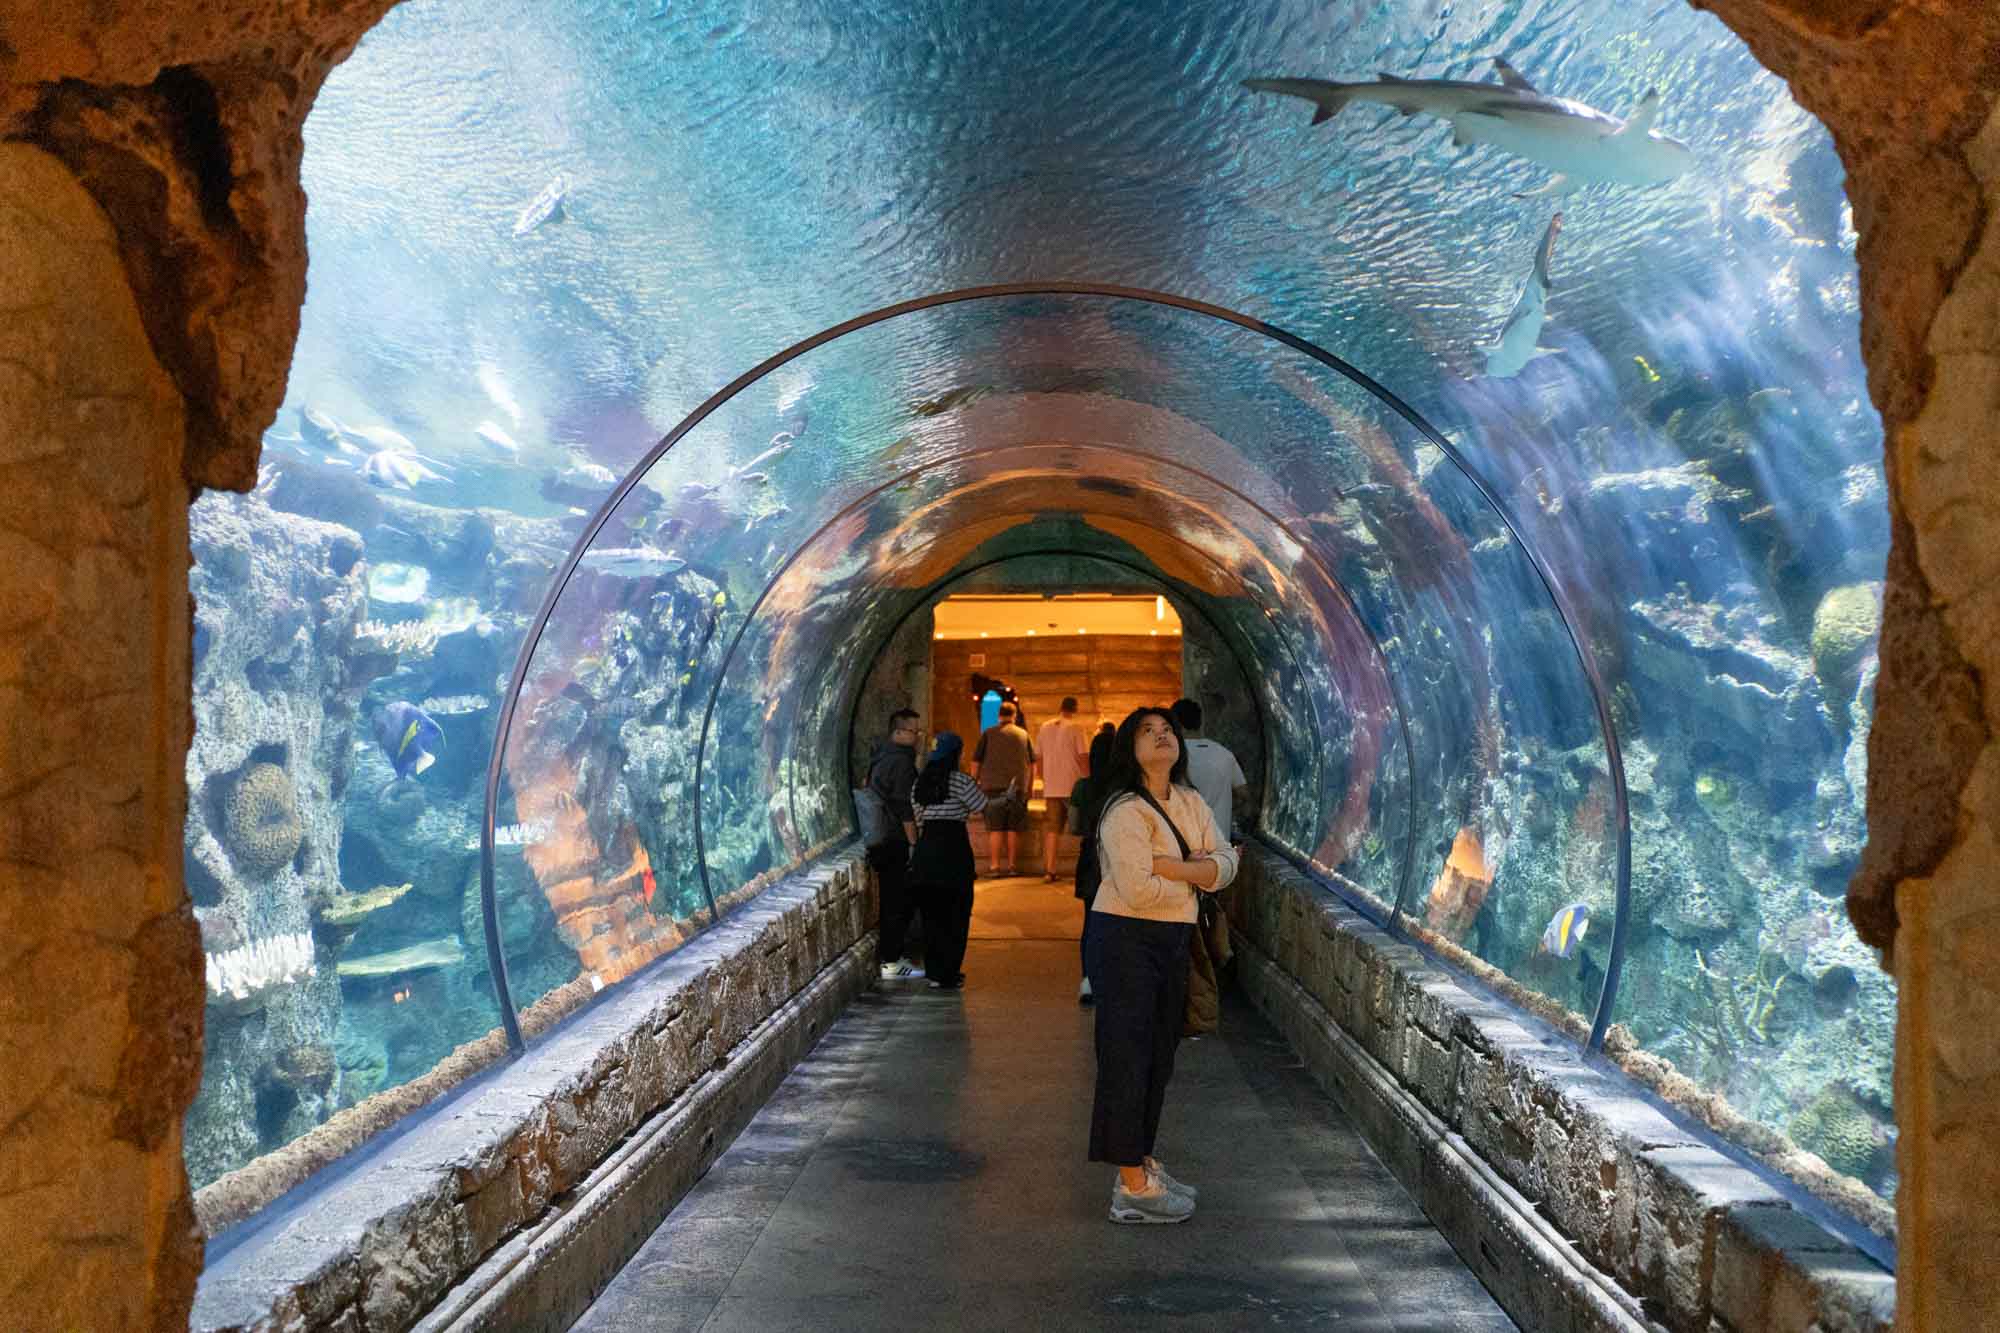 Mandalay Bay's Shark Reef Aquarium